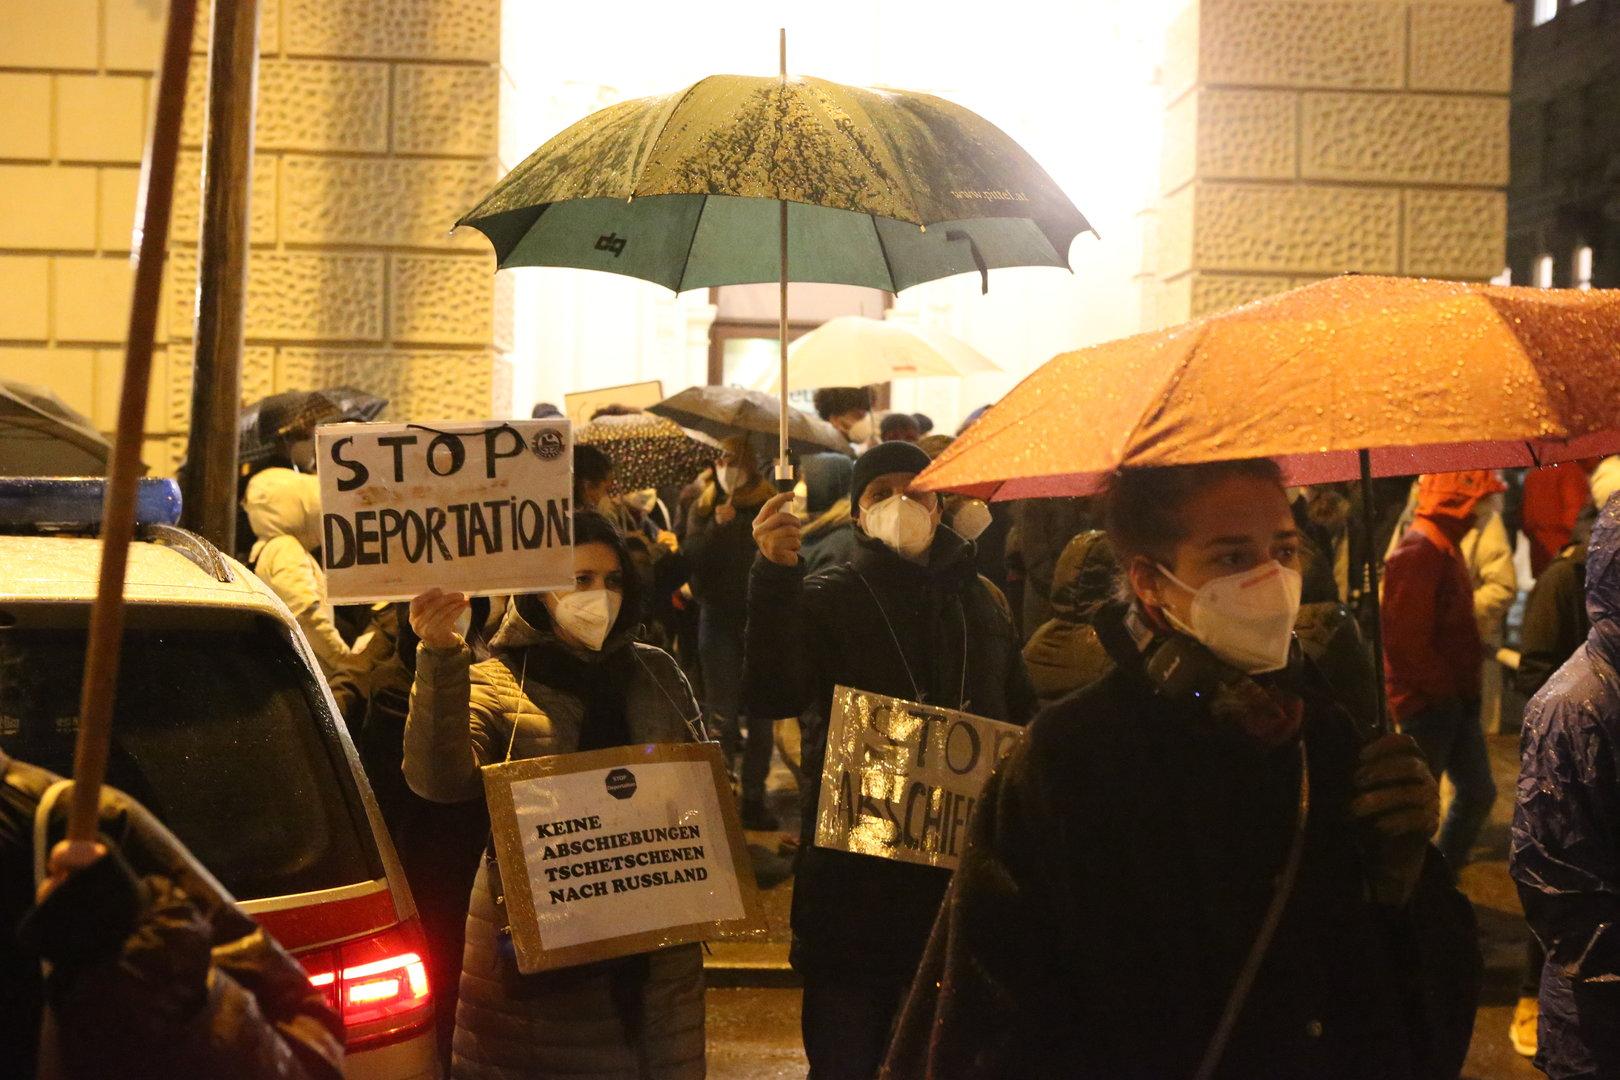 Abschiebung in Wien: Am Abend gingen die Proteste weiter